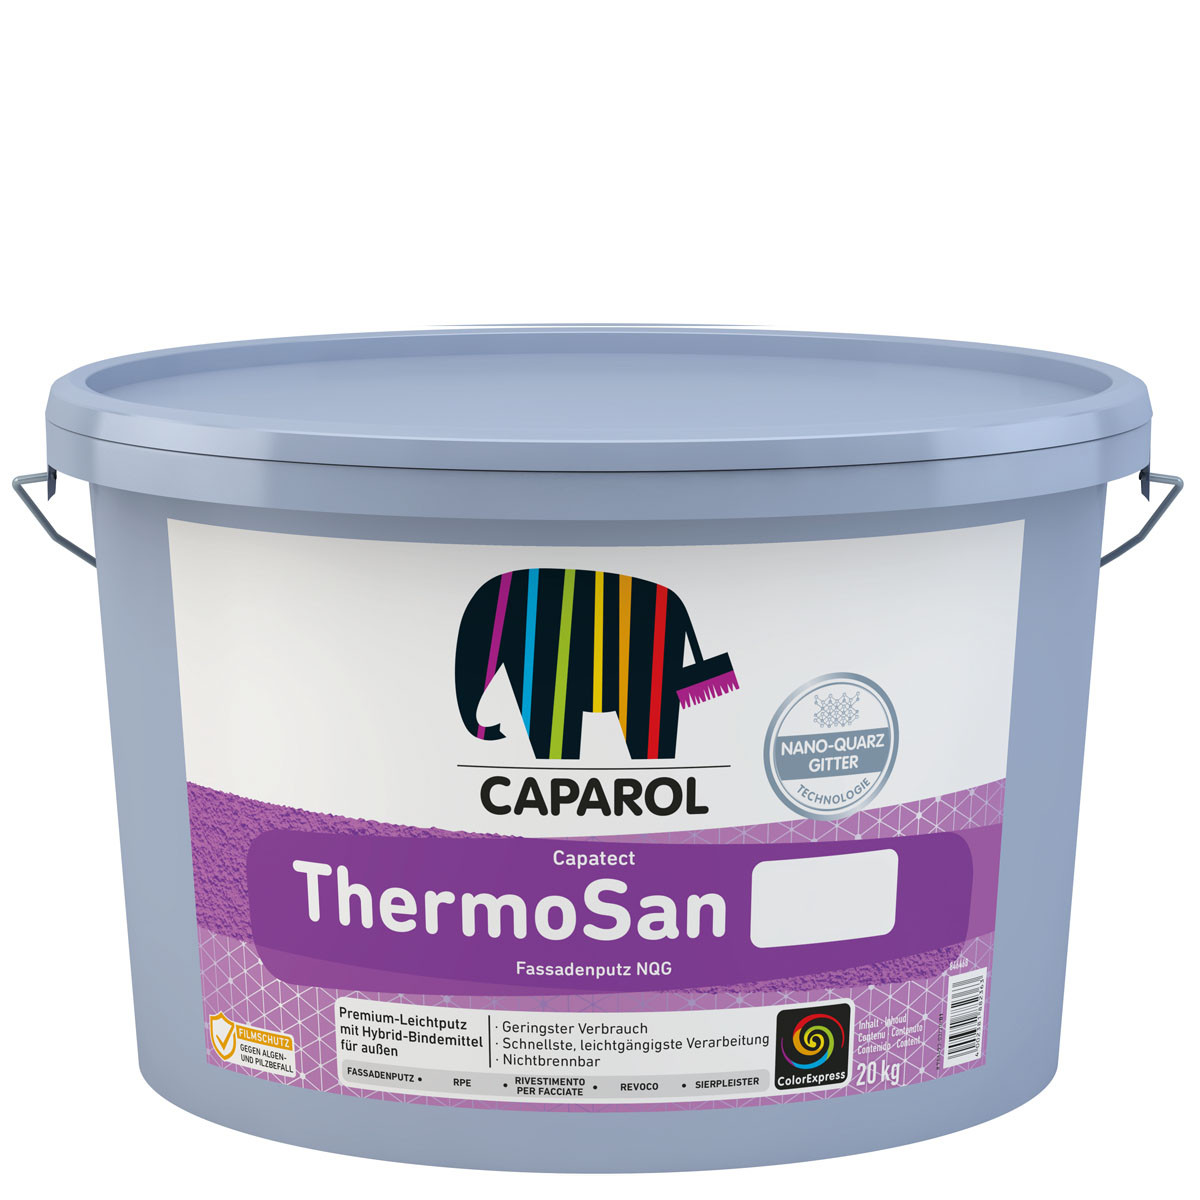 Caparol Capatect Thermosan Fassadenputz NQG K15 (1,5mm) 20kg, weiss